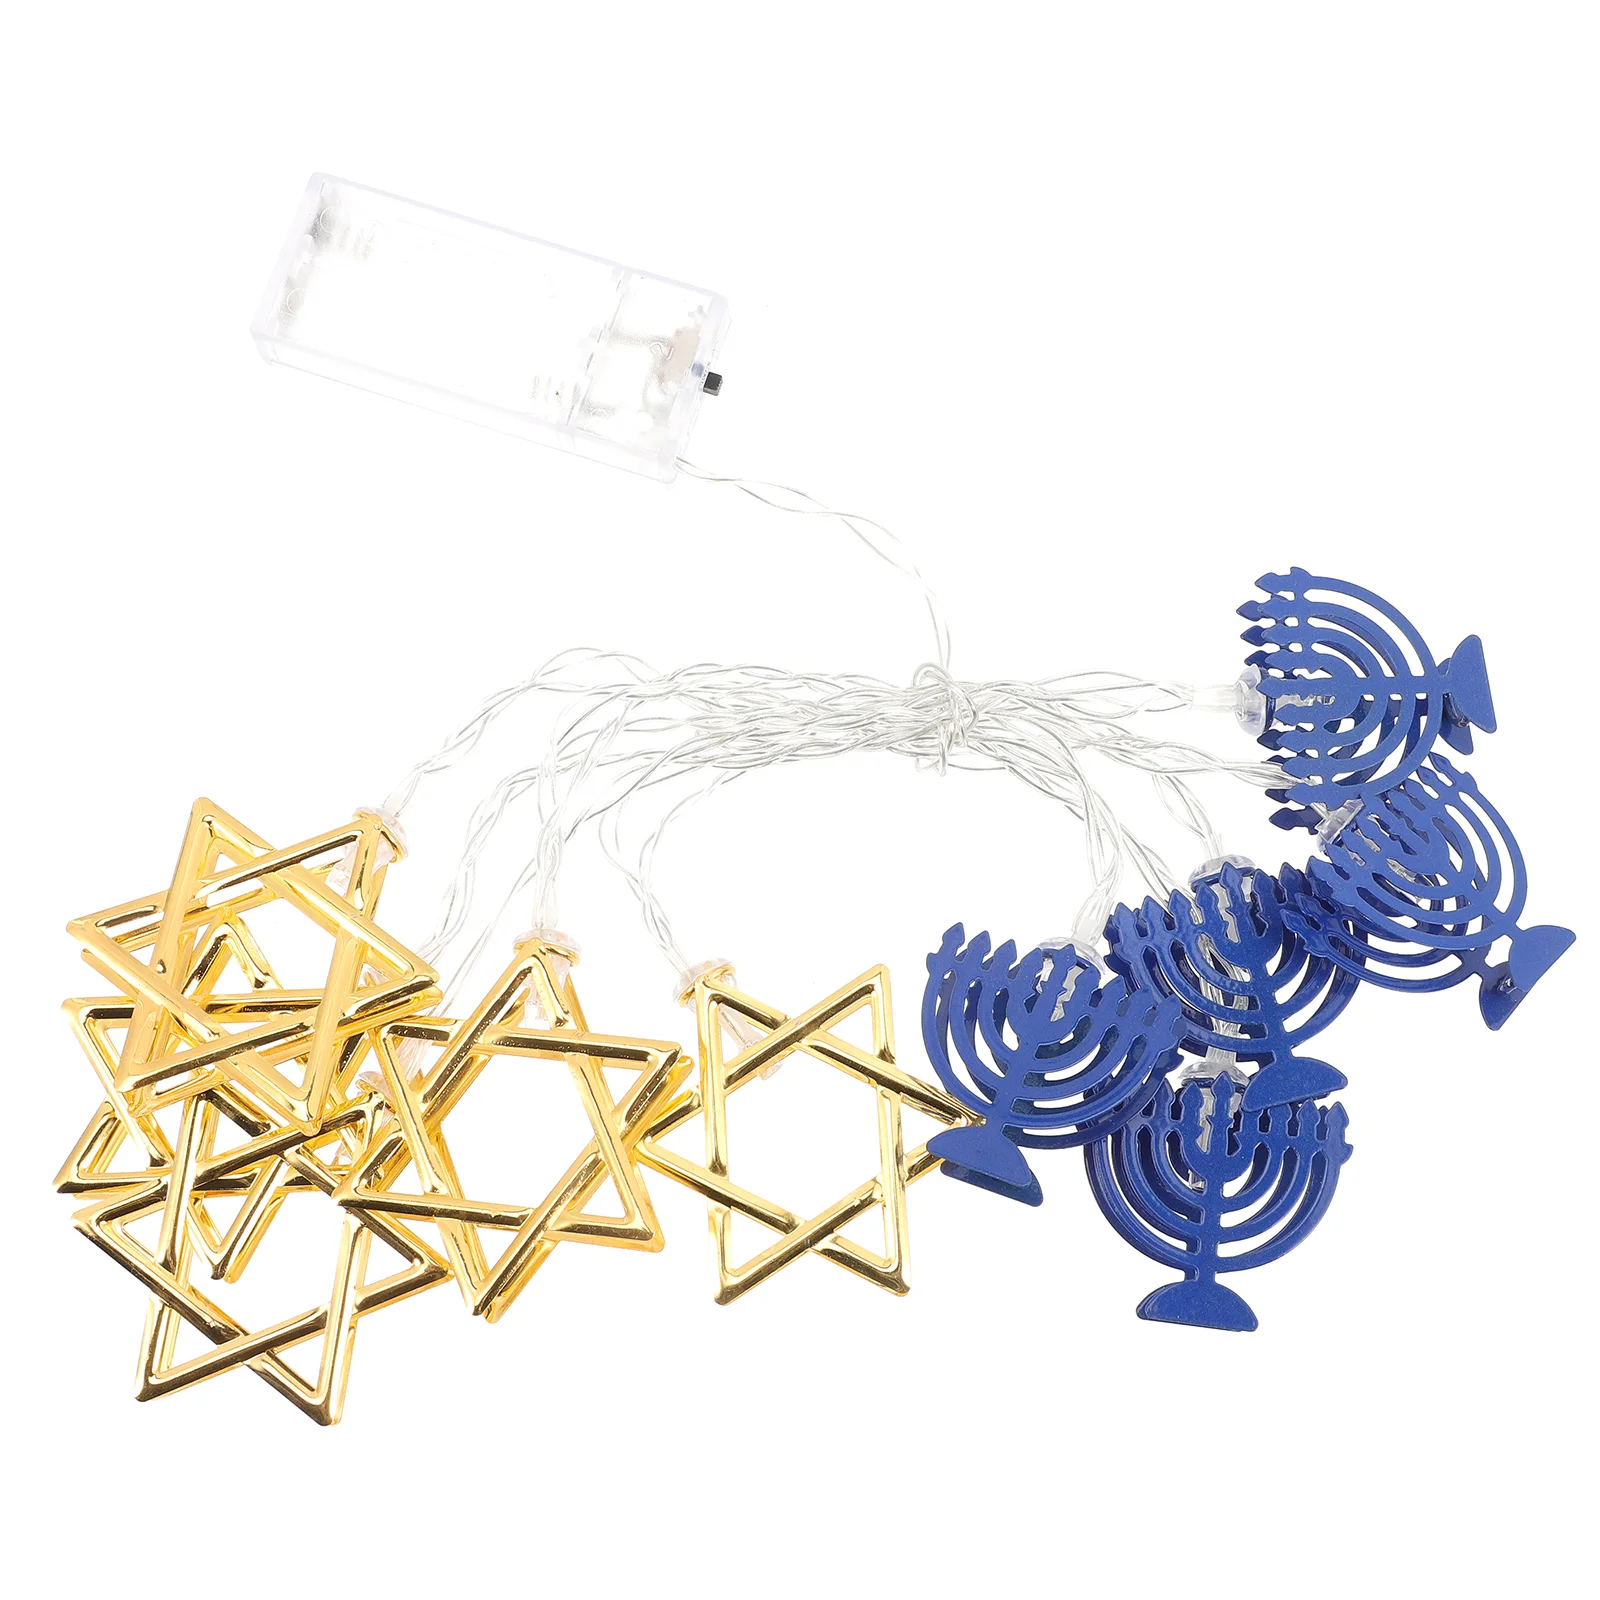 

Сказочная гирлянда hanukka в форме звезды, подсвечники, Менора, кованые железные украшения Chanukah, Менора, искусственный Декор